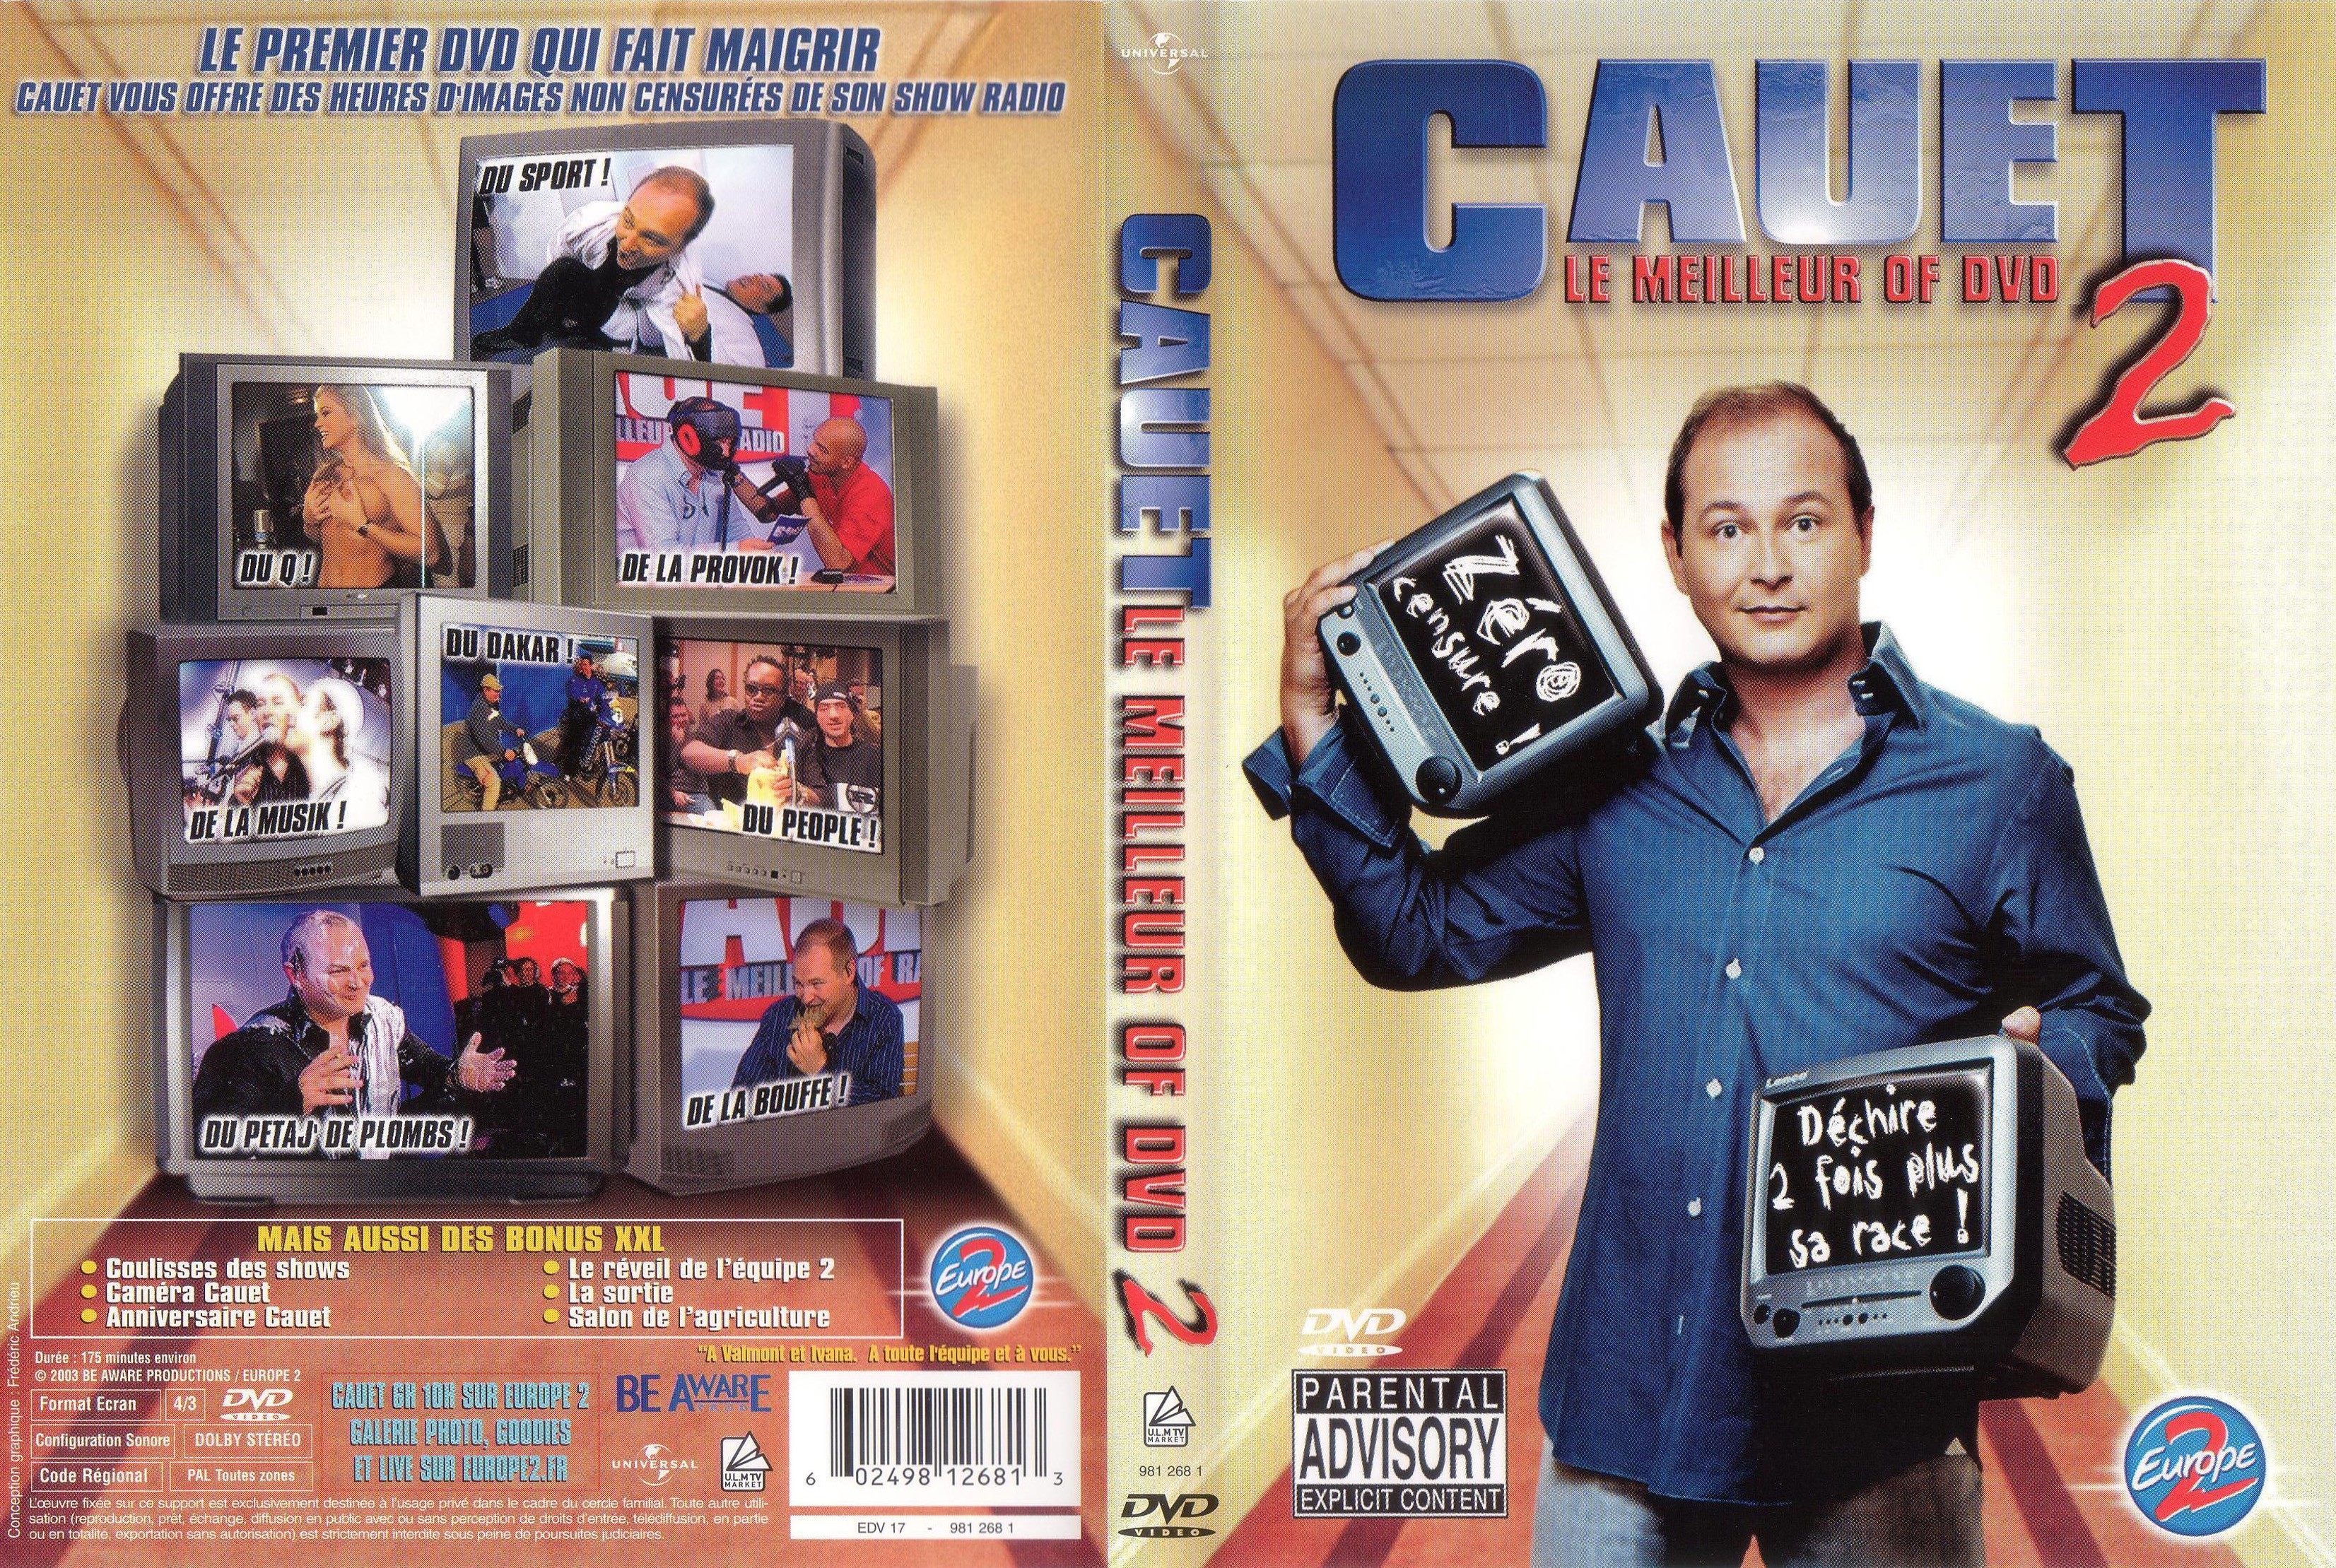 Jaquette DVD Cauet Le meilleur of DVD 2